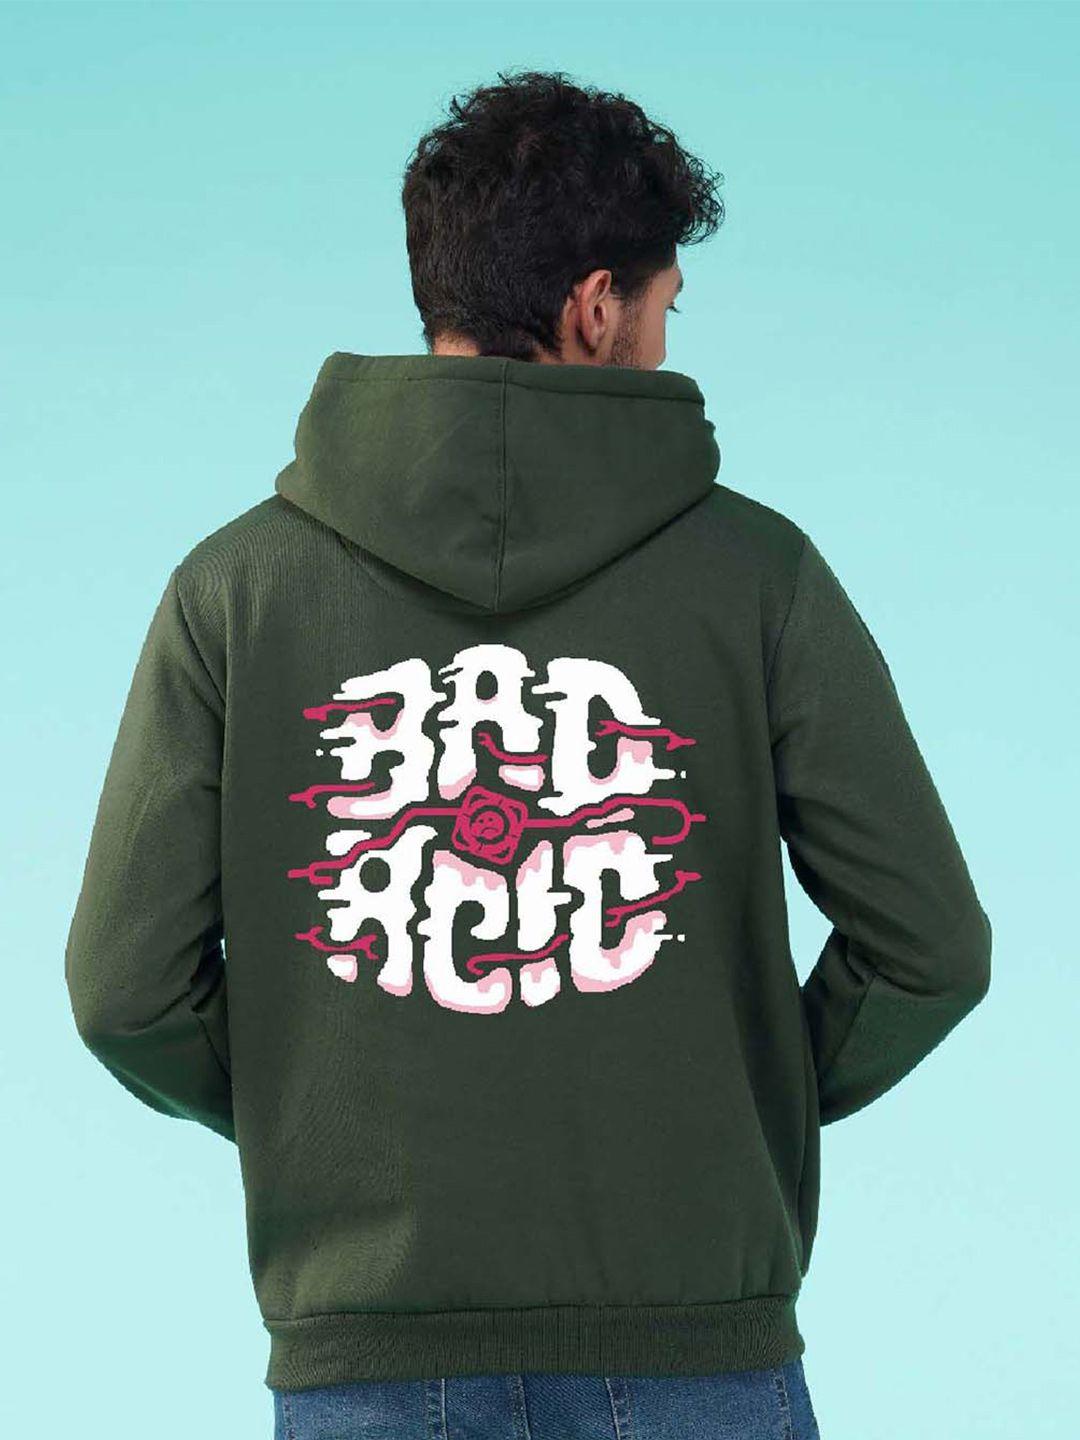 nusyl typography printed hooded fleece sweatshirt